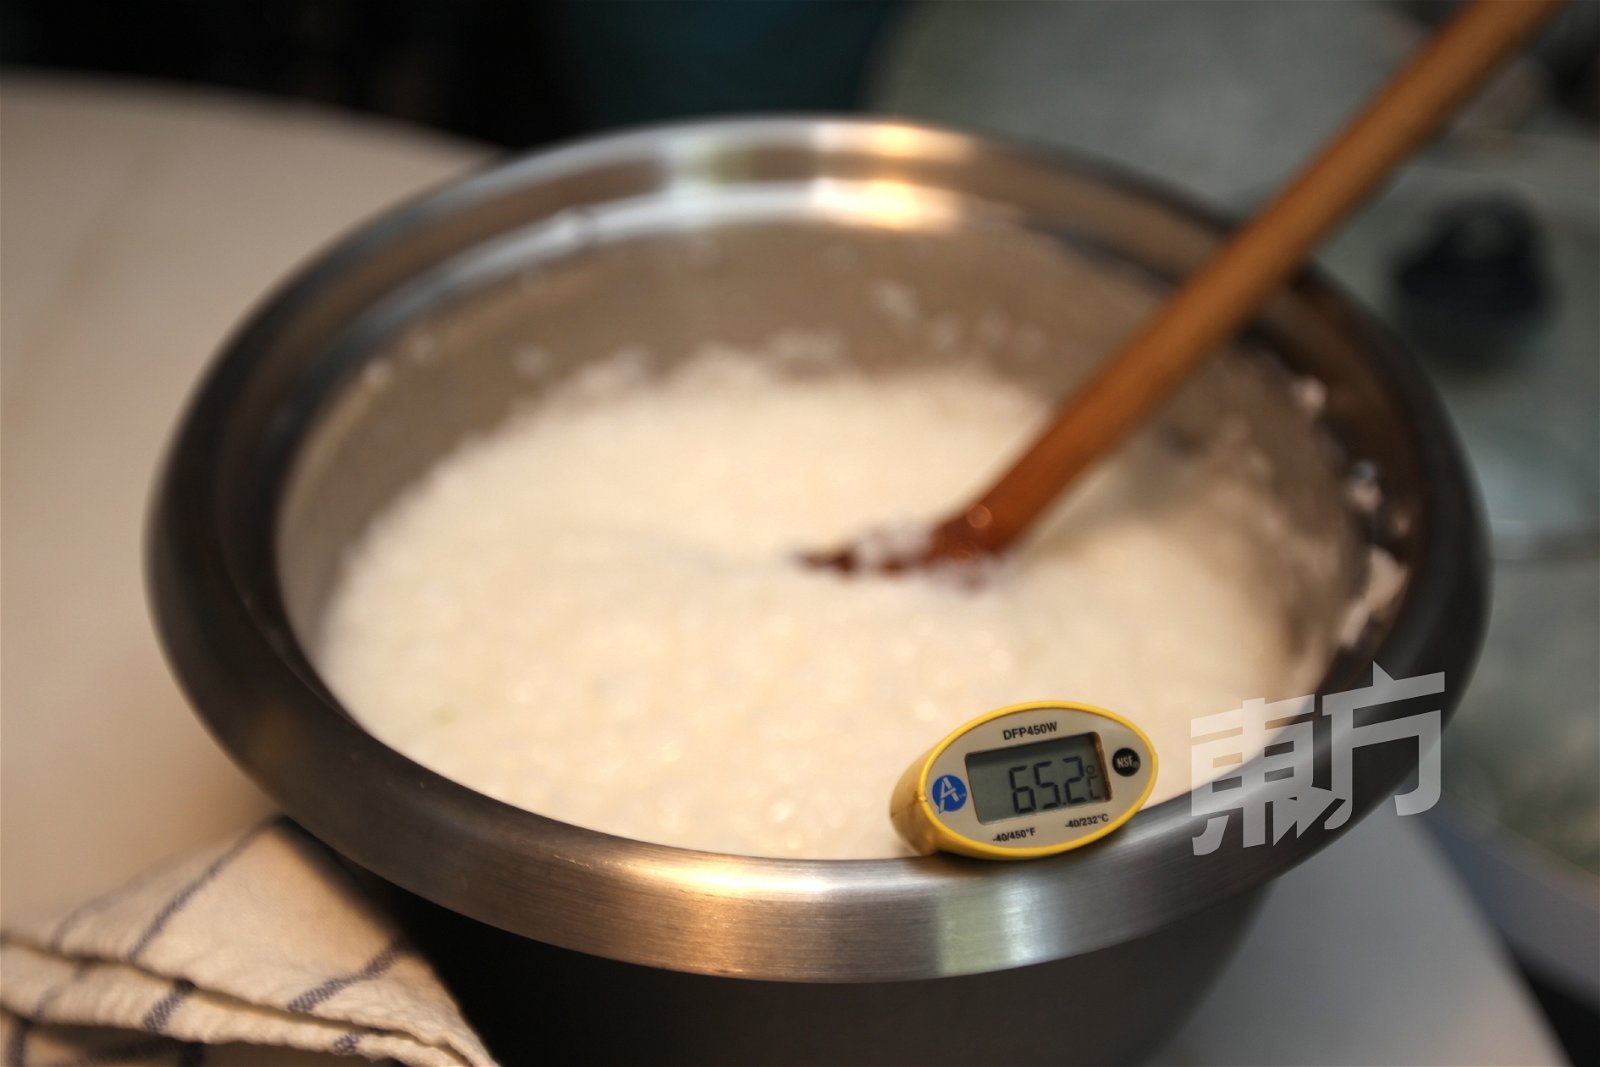 食安问题是许多人对自制发酵食物的隐忧，罗艳莹表示，只要时间、温度拿捏得好，就能确保发酵食物是安全的。她强调，米饭必须降温至摄氏60度以下才能加入米麹。